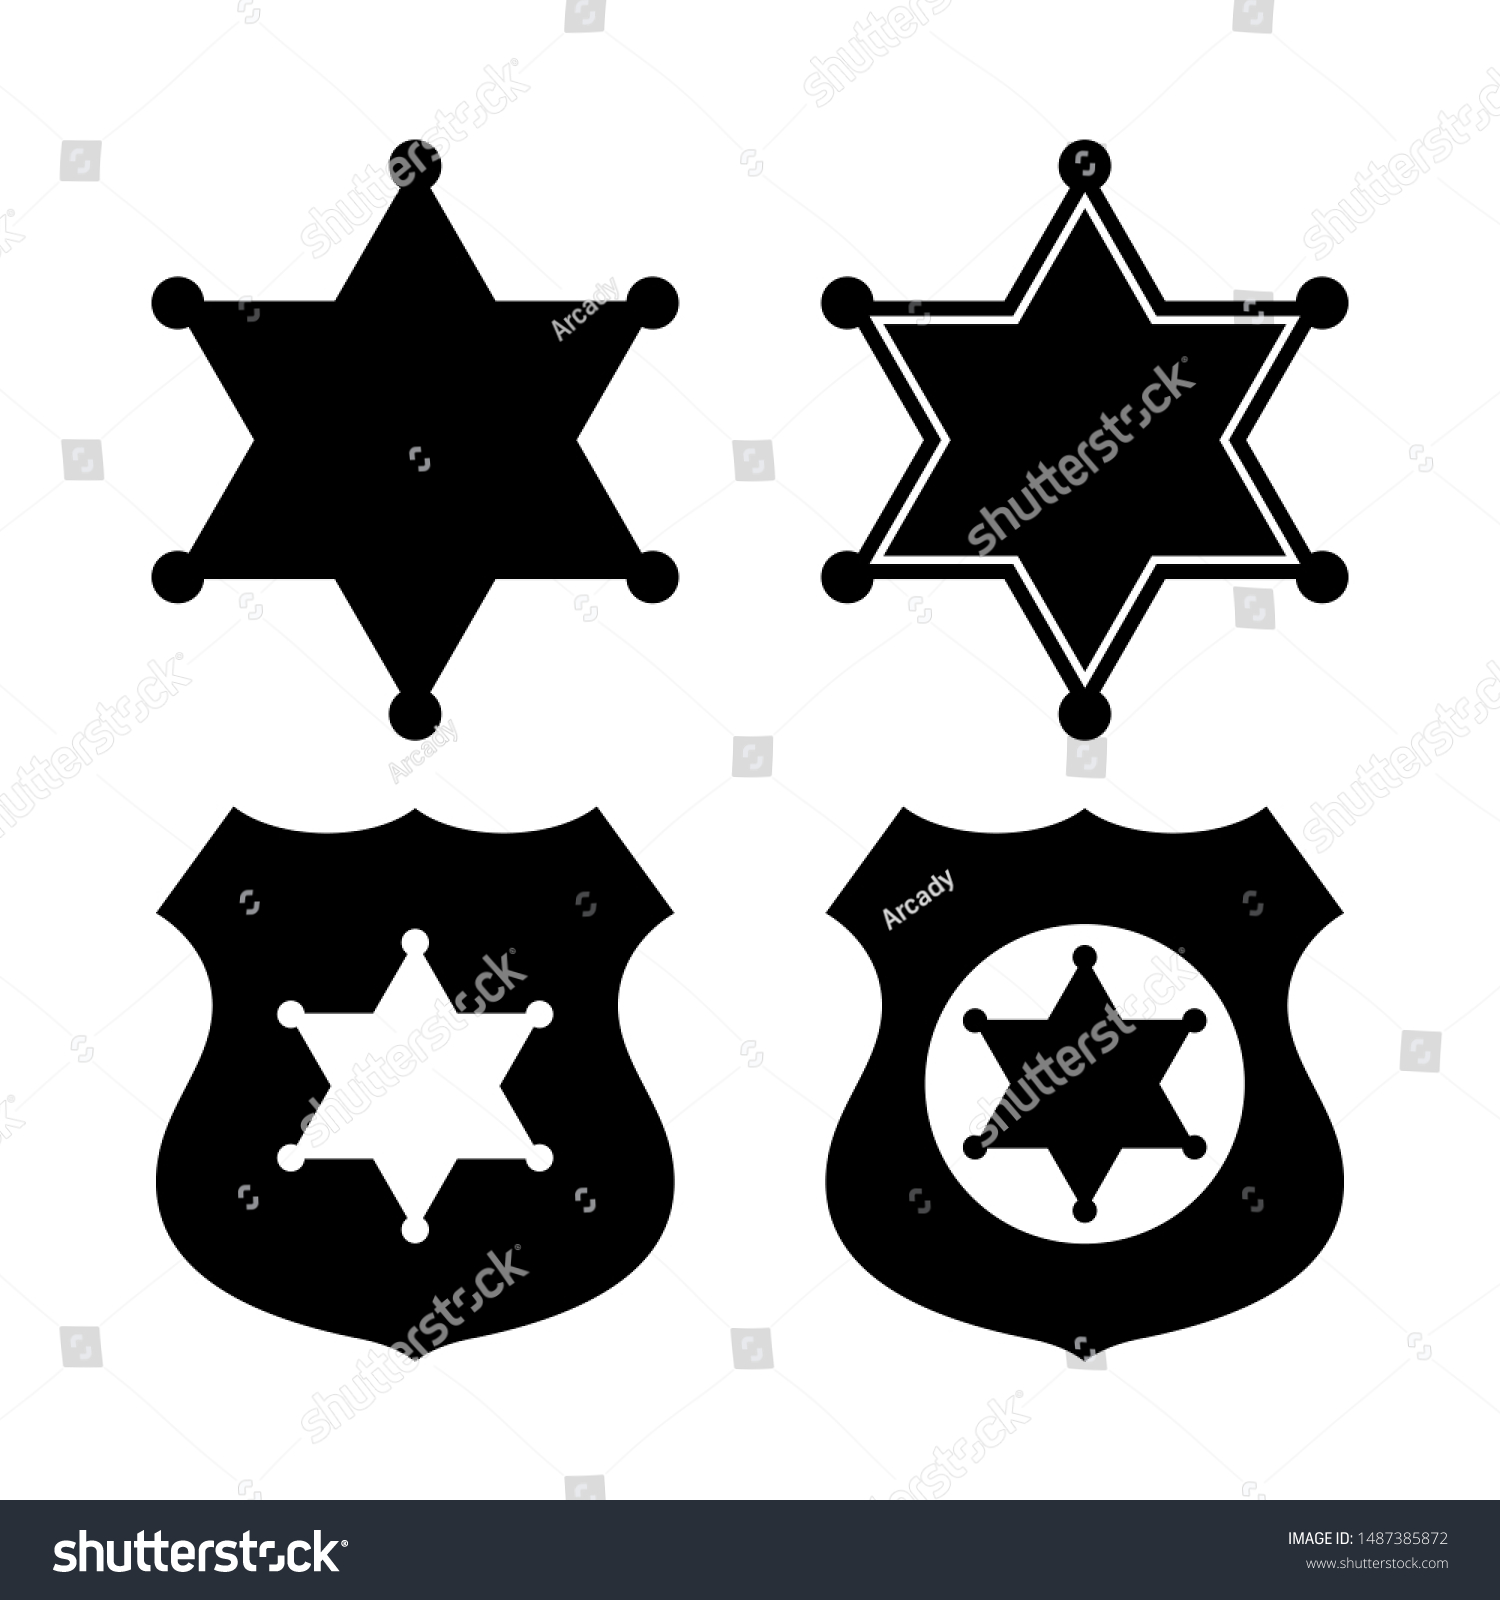 SVG of Sheriff star emblems set on white background svg